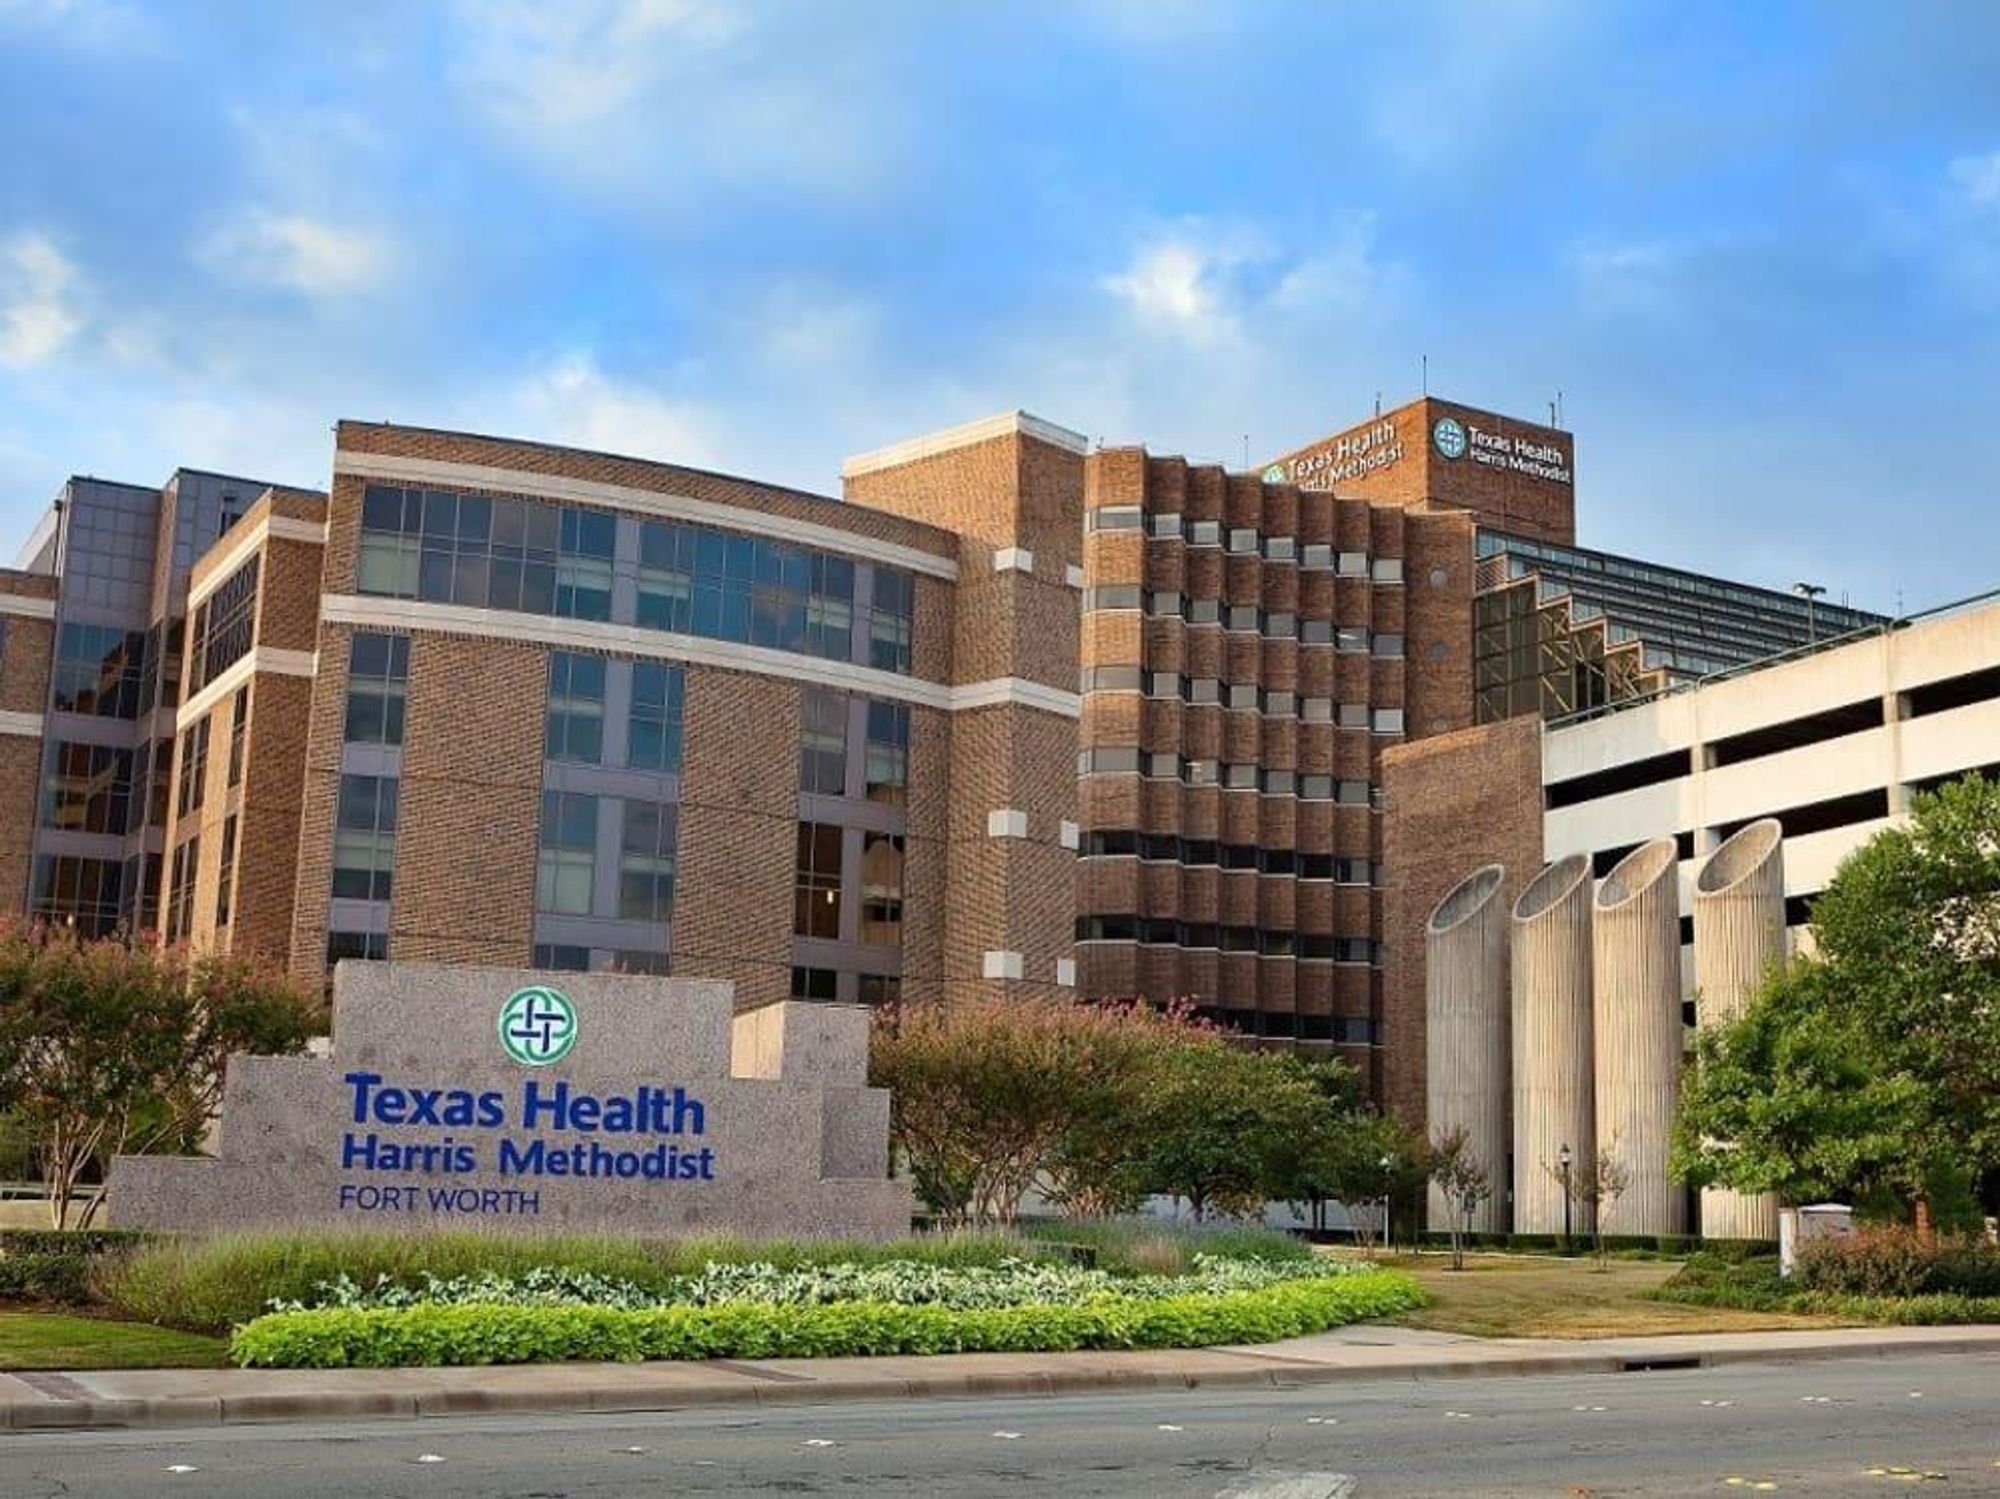 Texas Health hospital